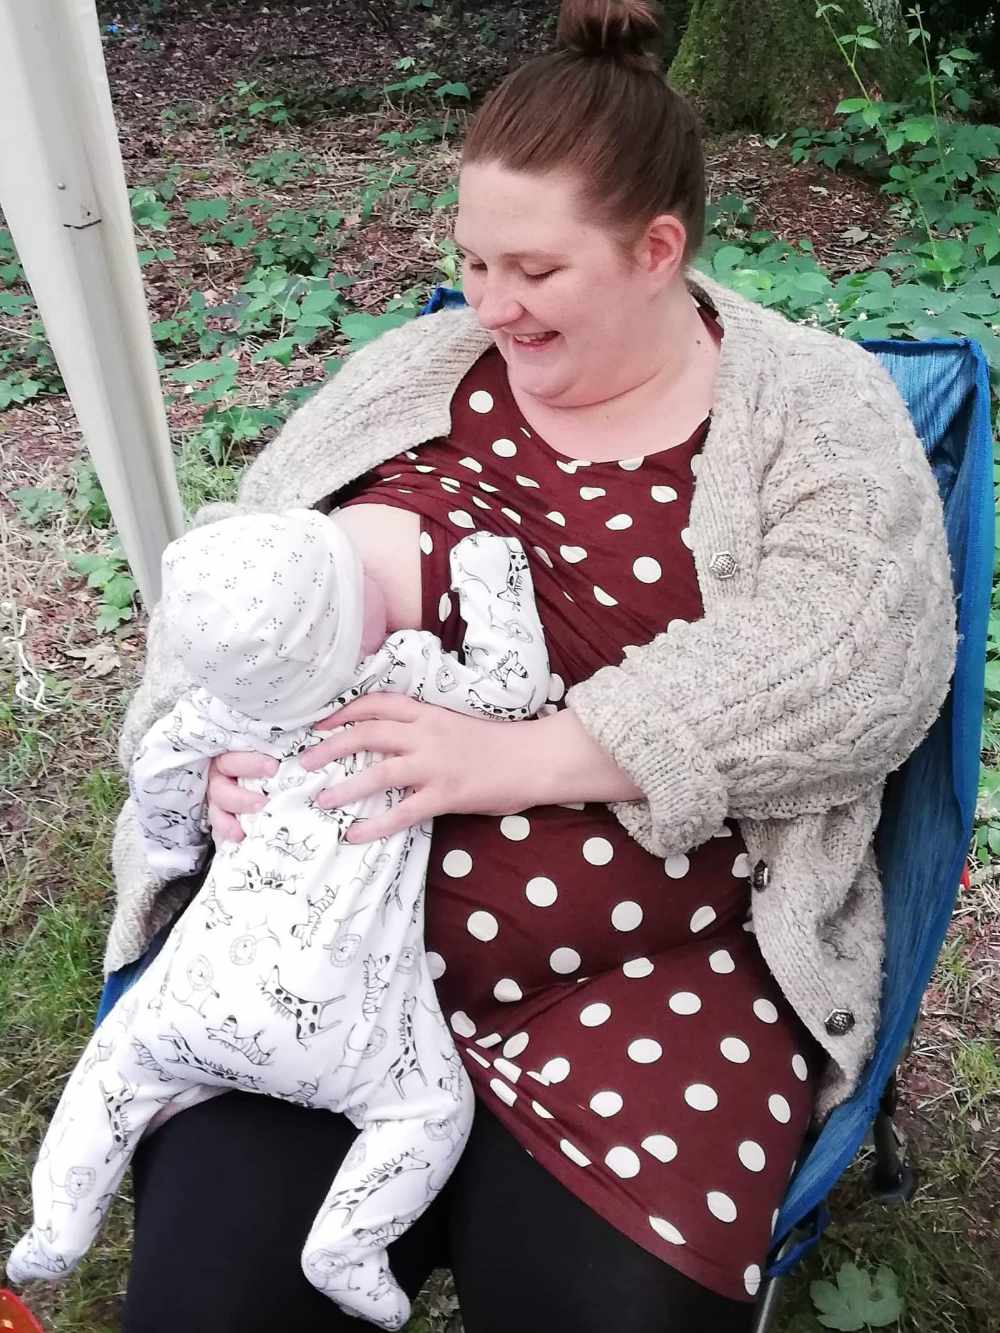 Breastfeeding with Big Boobs